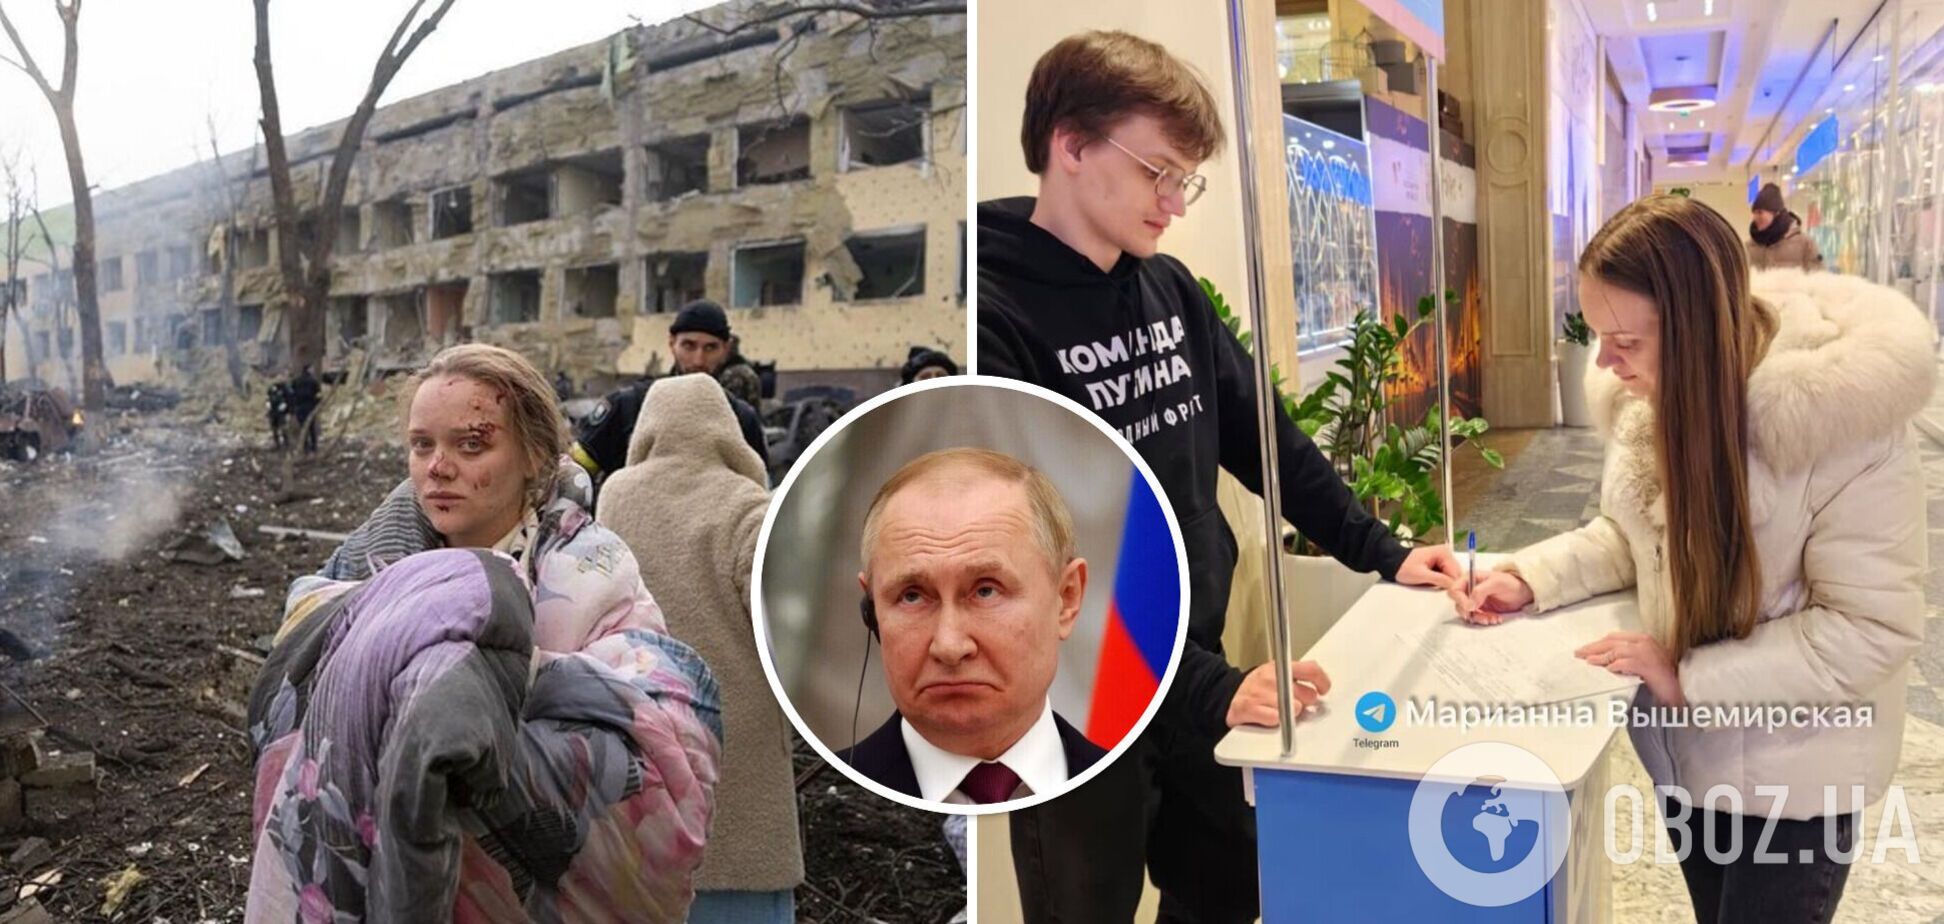 Молиться на Путіна і розказує, як 'бамбілі Донбас': де зараз породілля з Маріуполя, фото якої облетіли весь світ